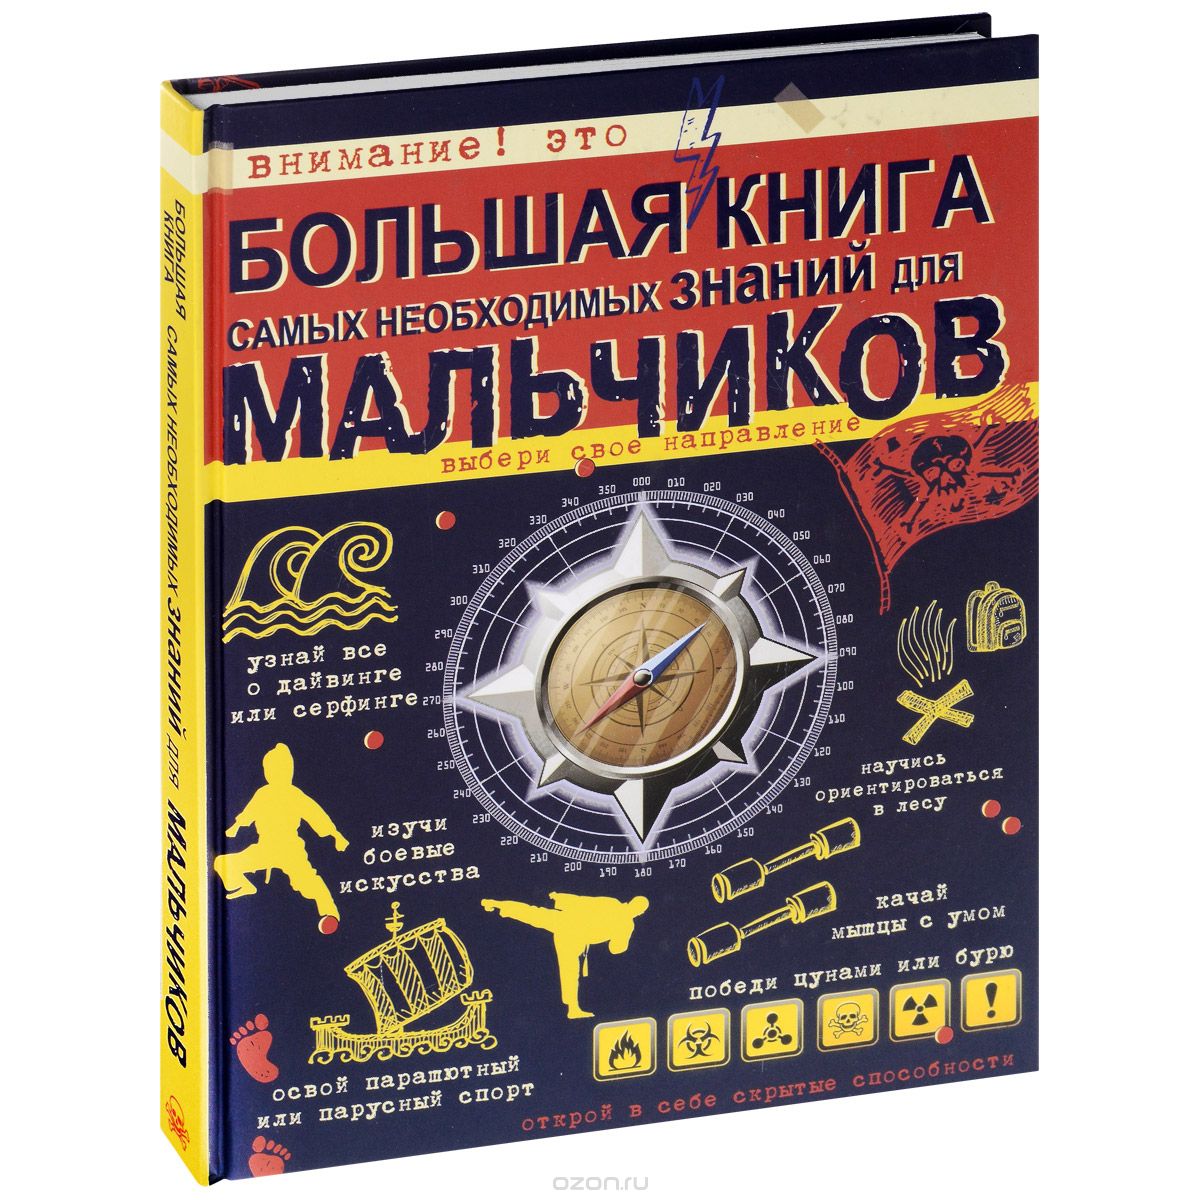 Скачать книгу "Большая книга самых необходимых знаний для мальчиков, С. П. Цеханский"